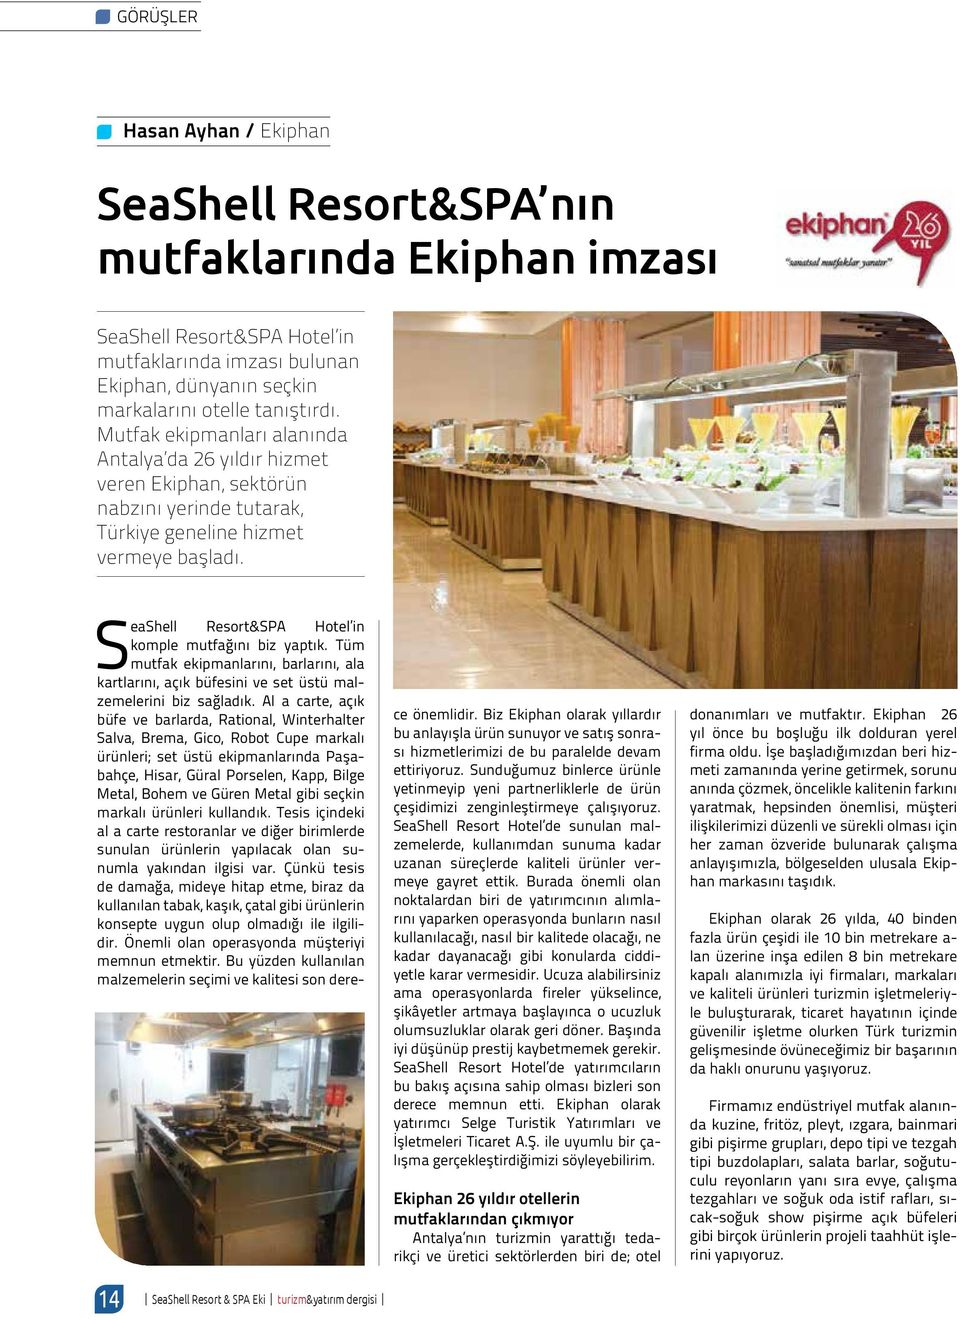 SeaShell Resort&SPA Hotel in komple mutfağını biz yaptık. Tüm mutfak ekipmanlarını, barlarını, ala kartlarını, açık büfesini ve set üstü malzemelerini biz sağladık.